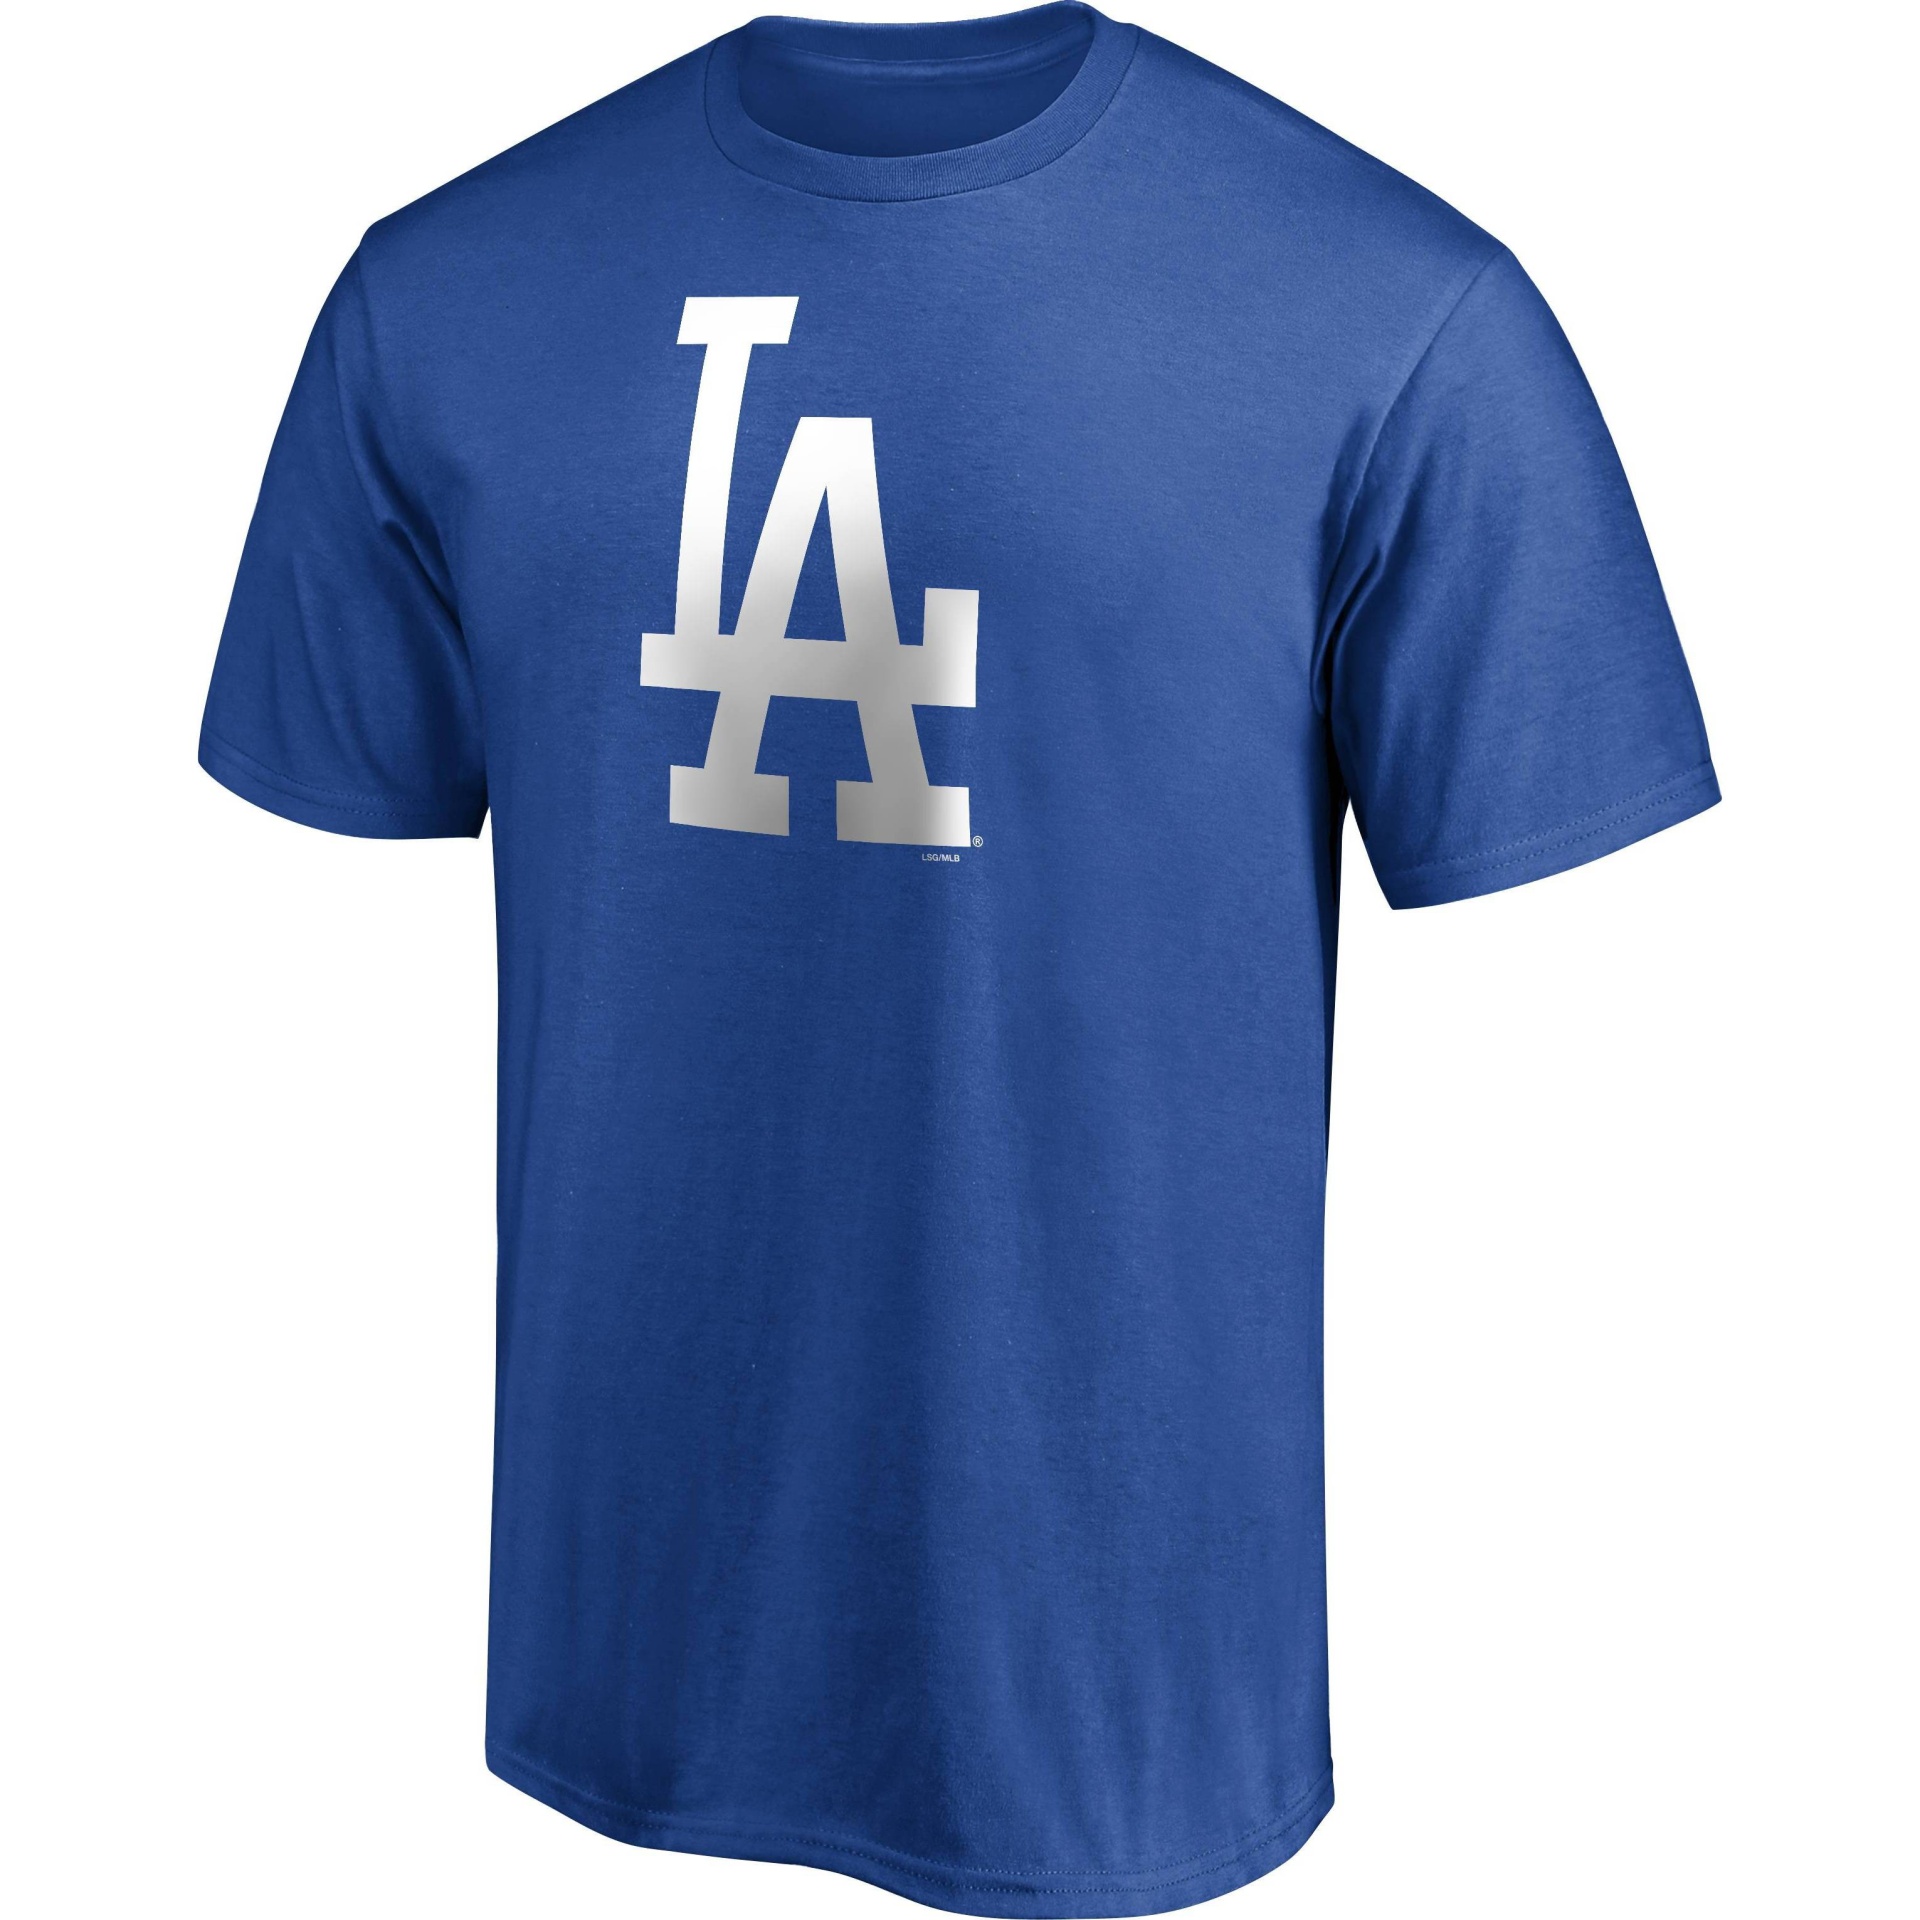 MLB Men's Shirt - Blue - XL